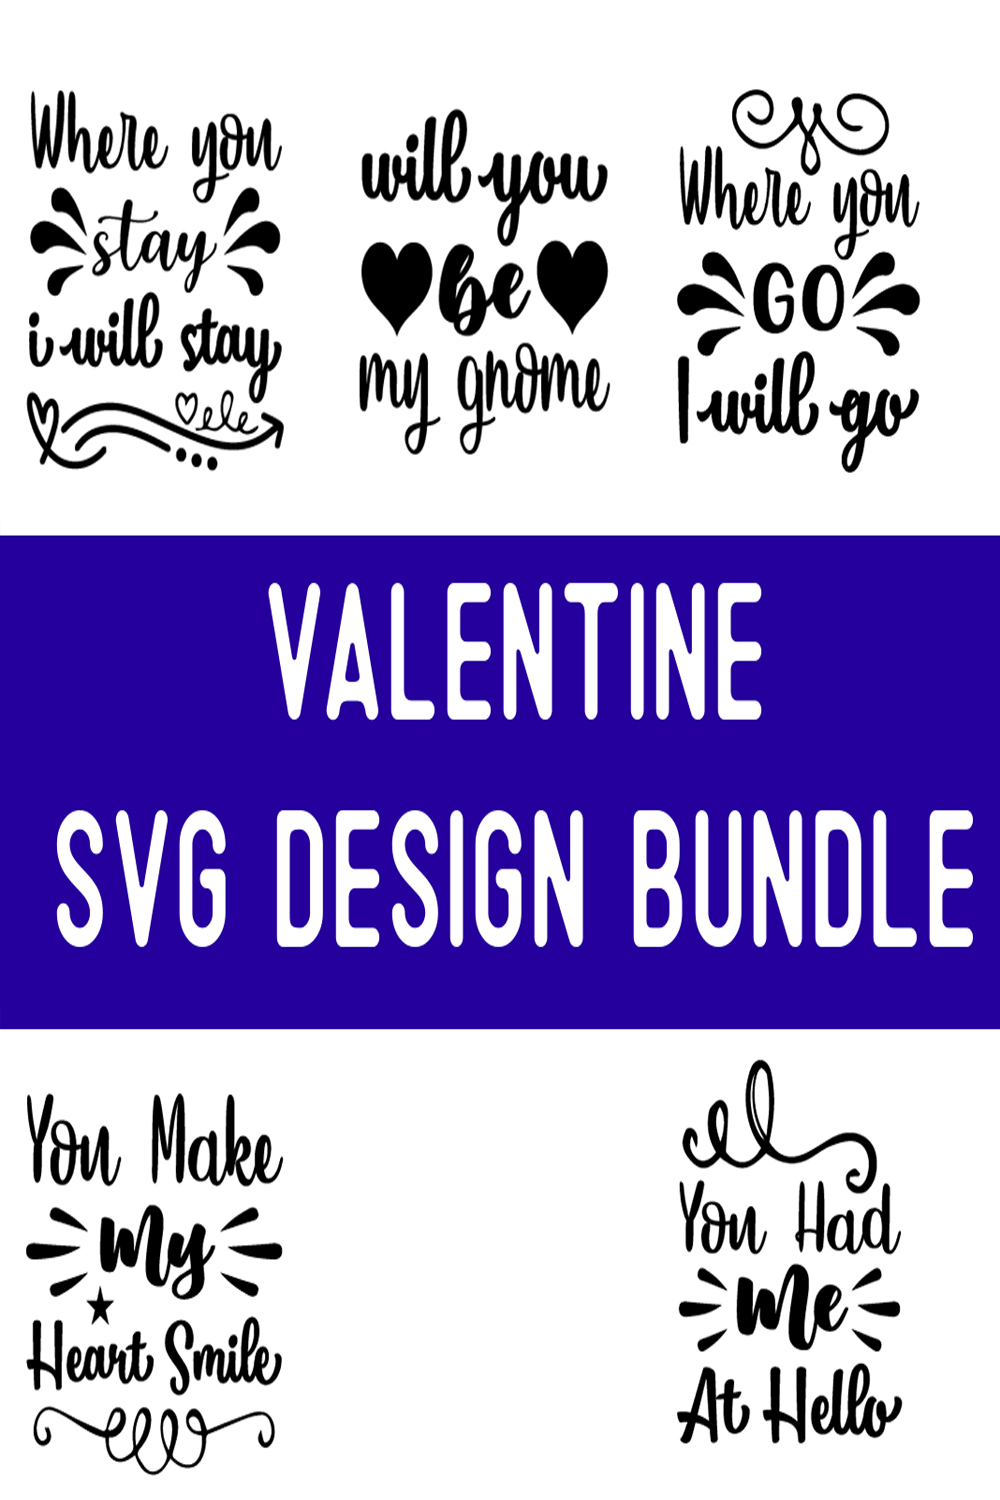 Valentine SVG Design Bundle pinterest preview image.